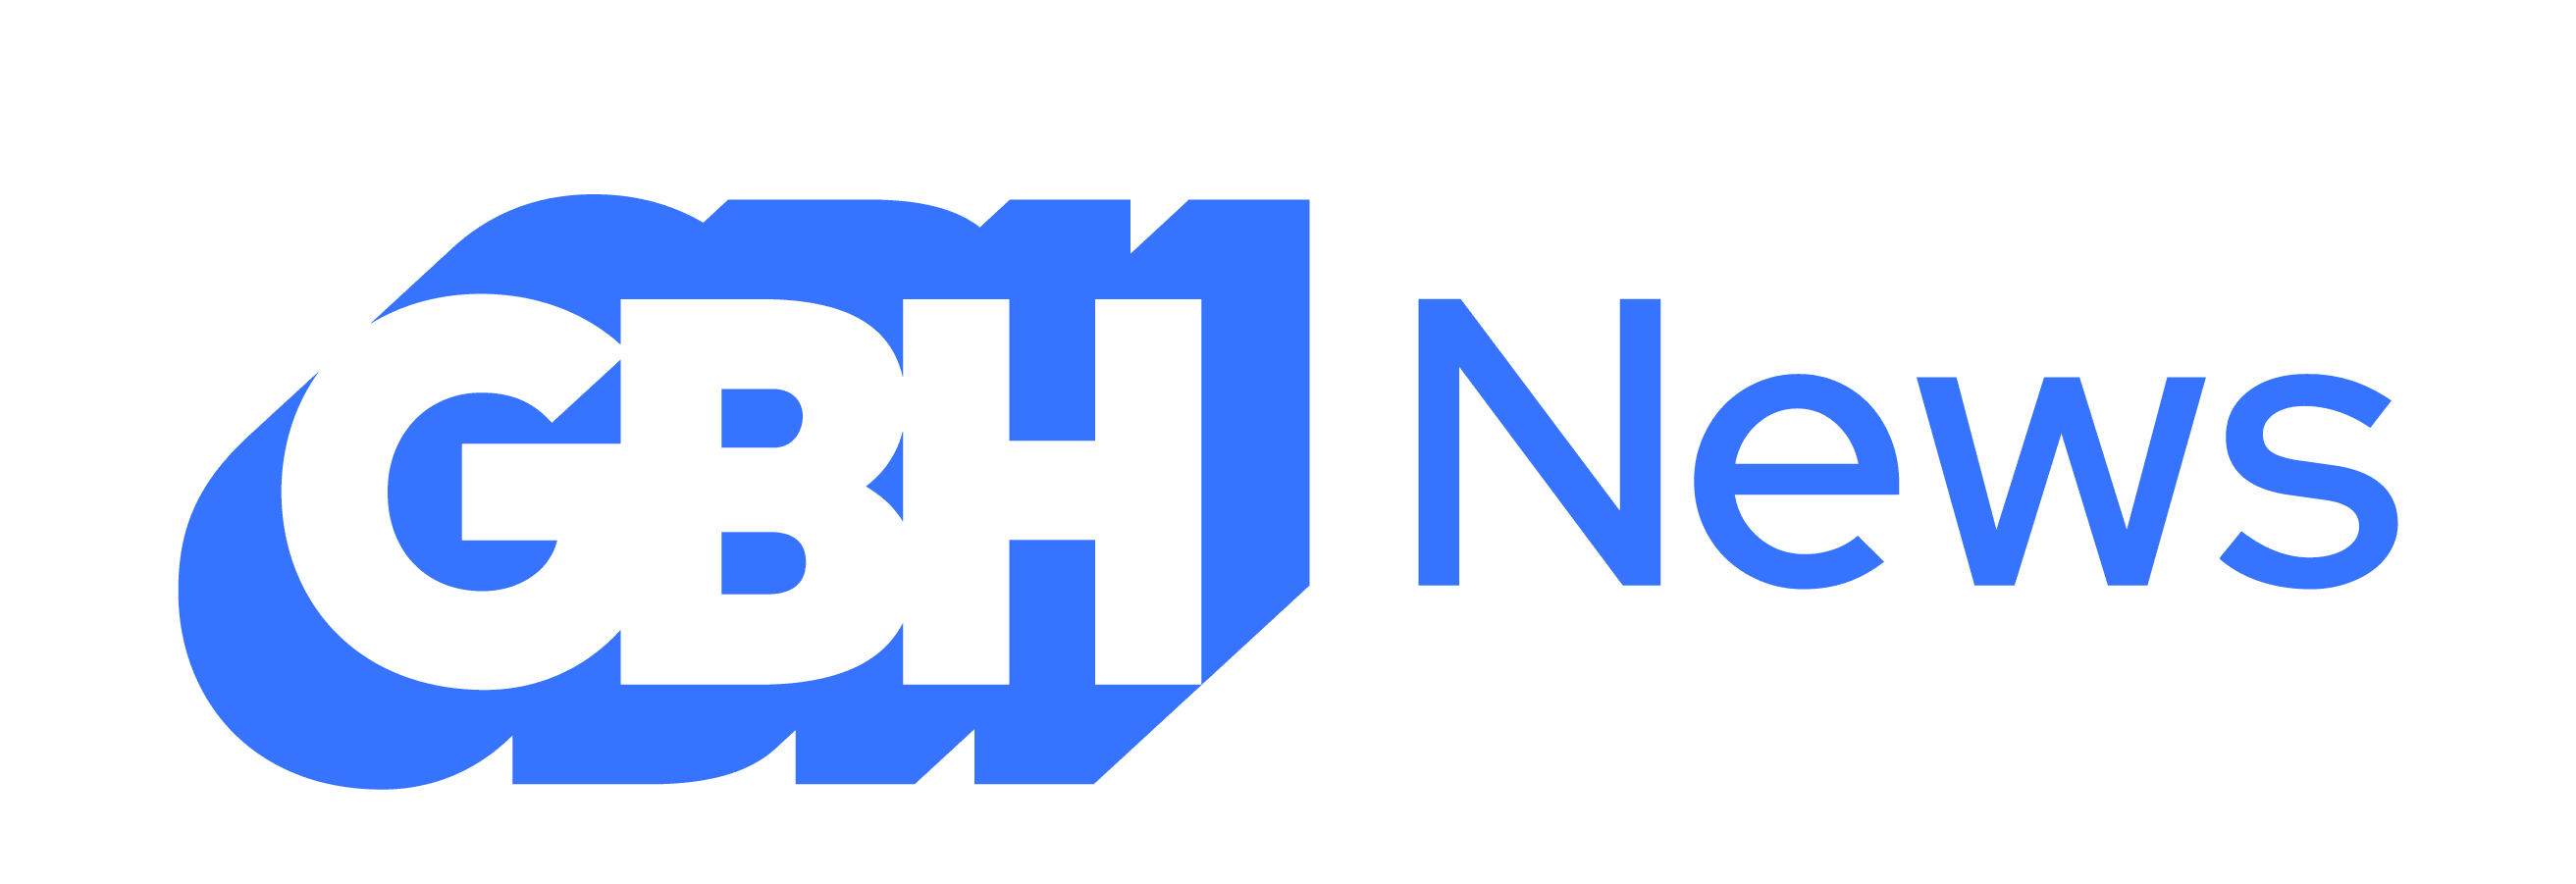 GBH News blue logo